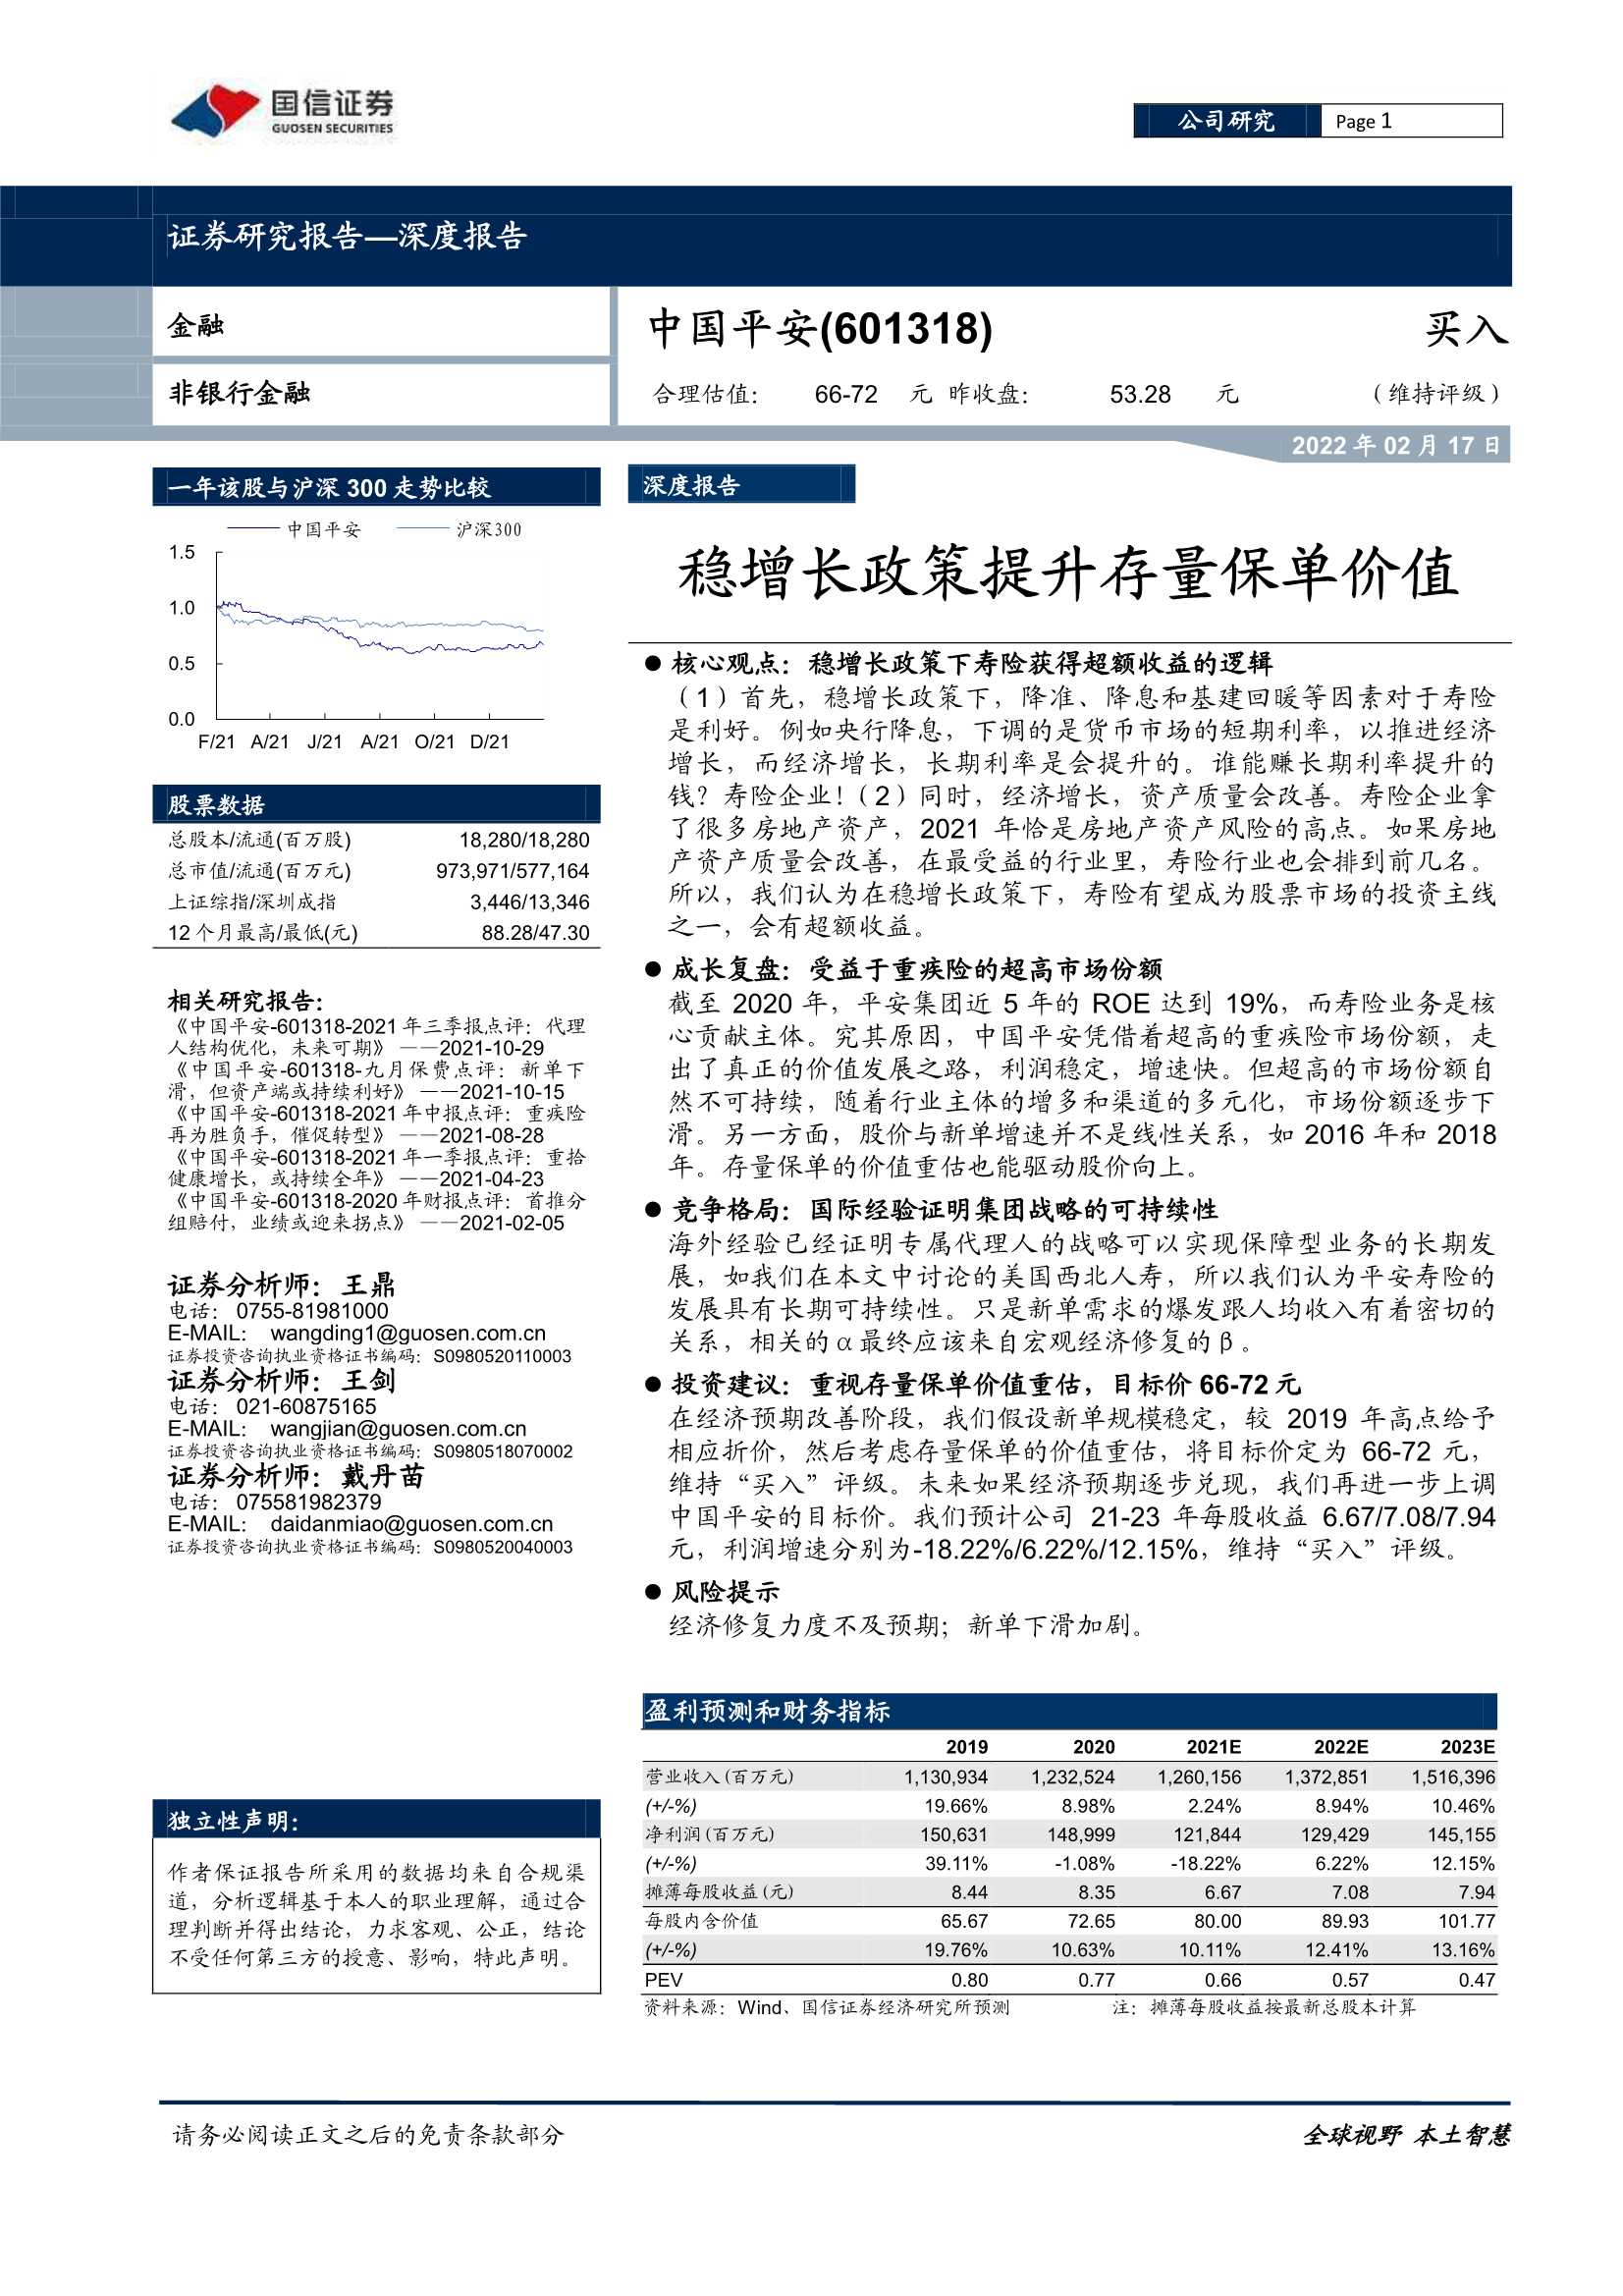 国信证券-中国平安-601318-稳增长政策提升存量保单价值-20220217-46页